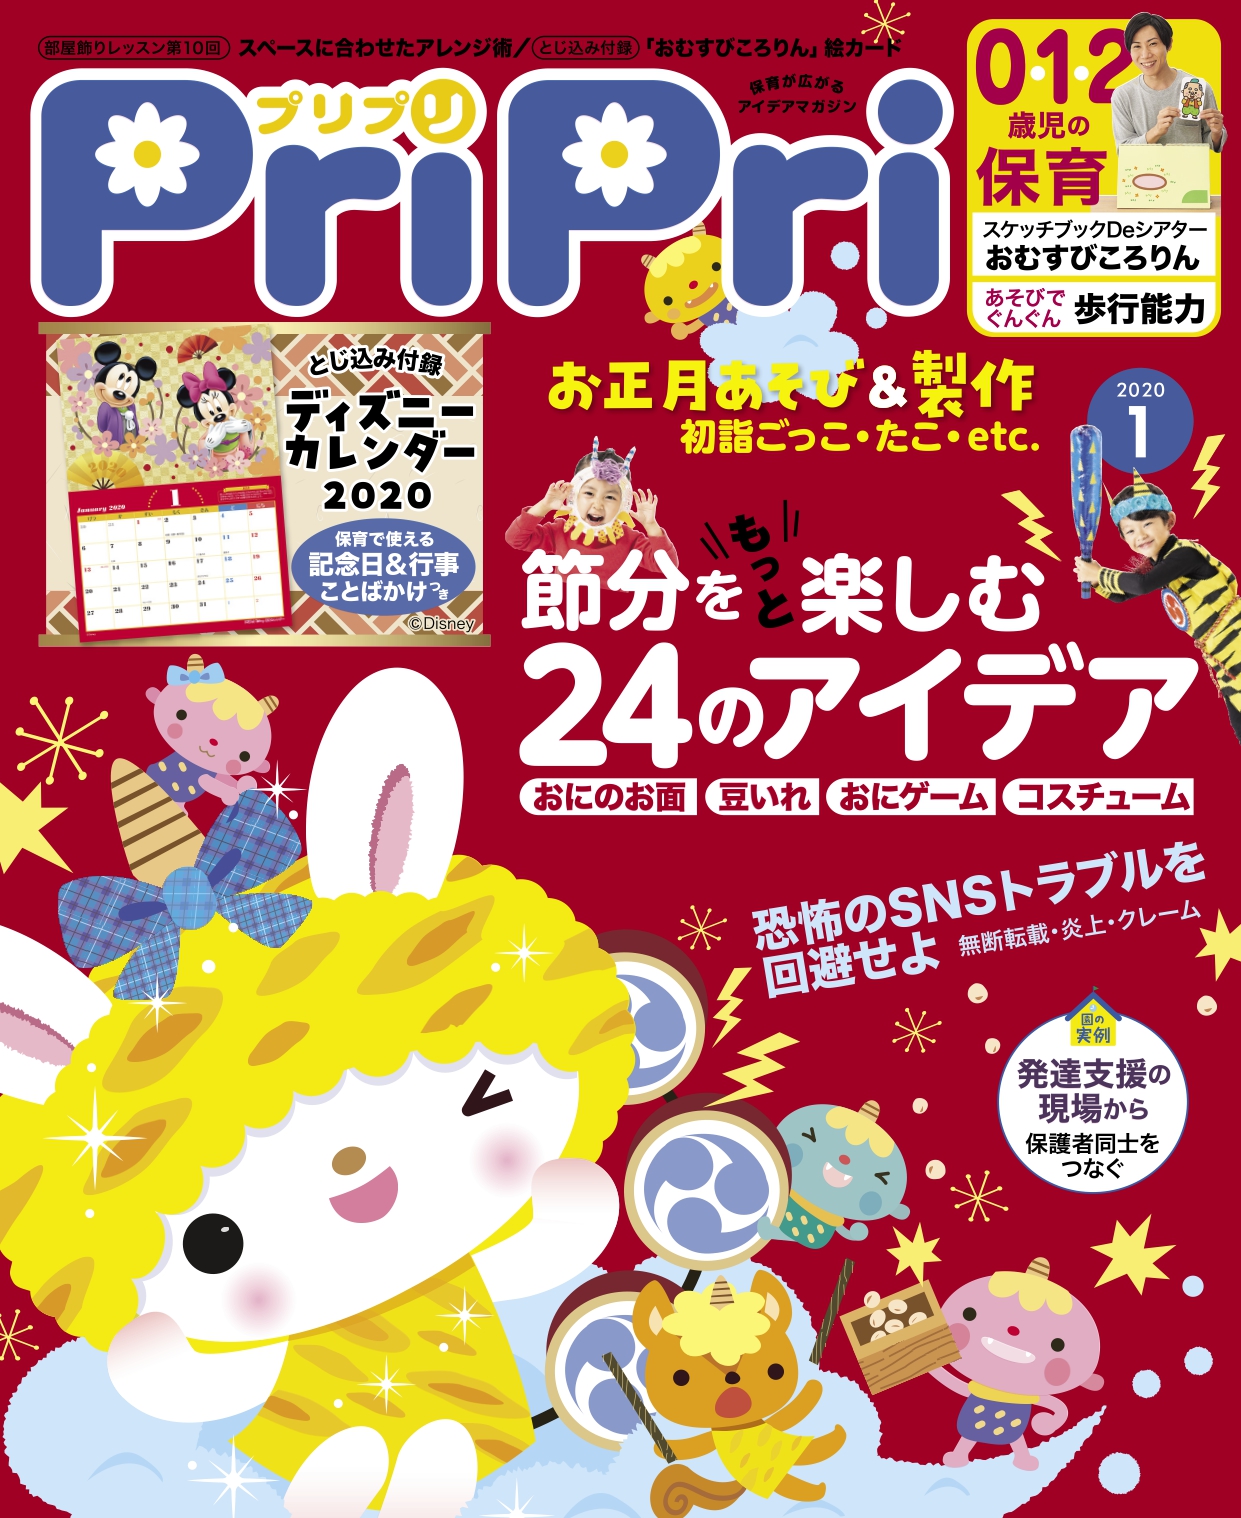 あそびを通じて日本の伝統に親しむ お正月 節分大特集 Pripri 年1月号 株式会社世界文化ホールディングスのプレスリリース